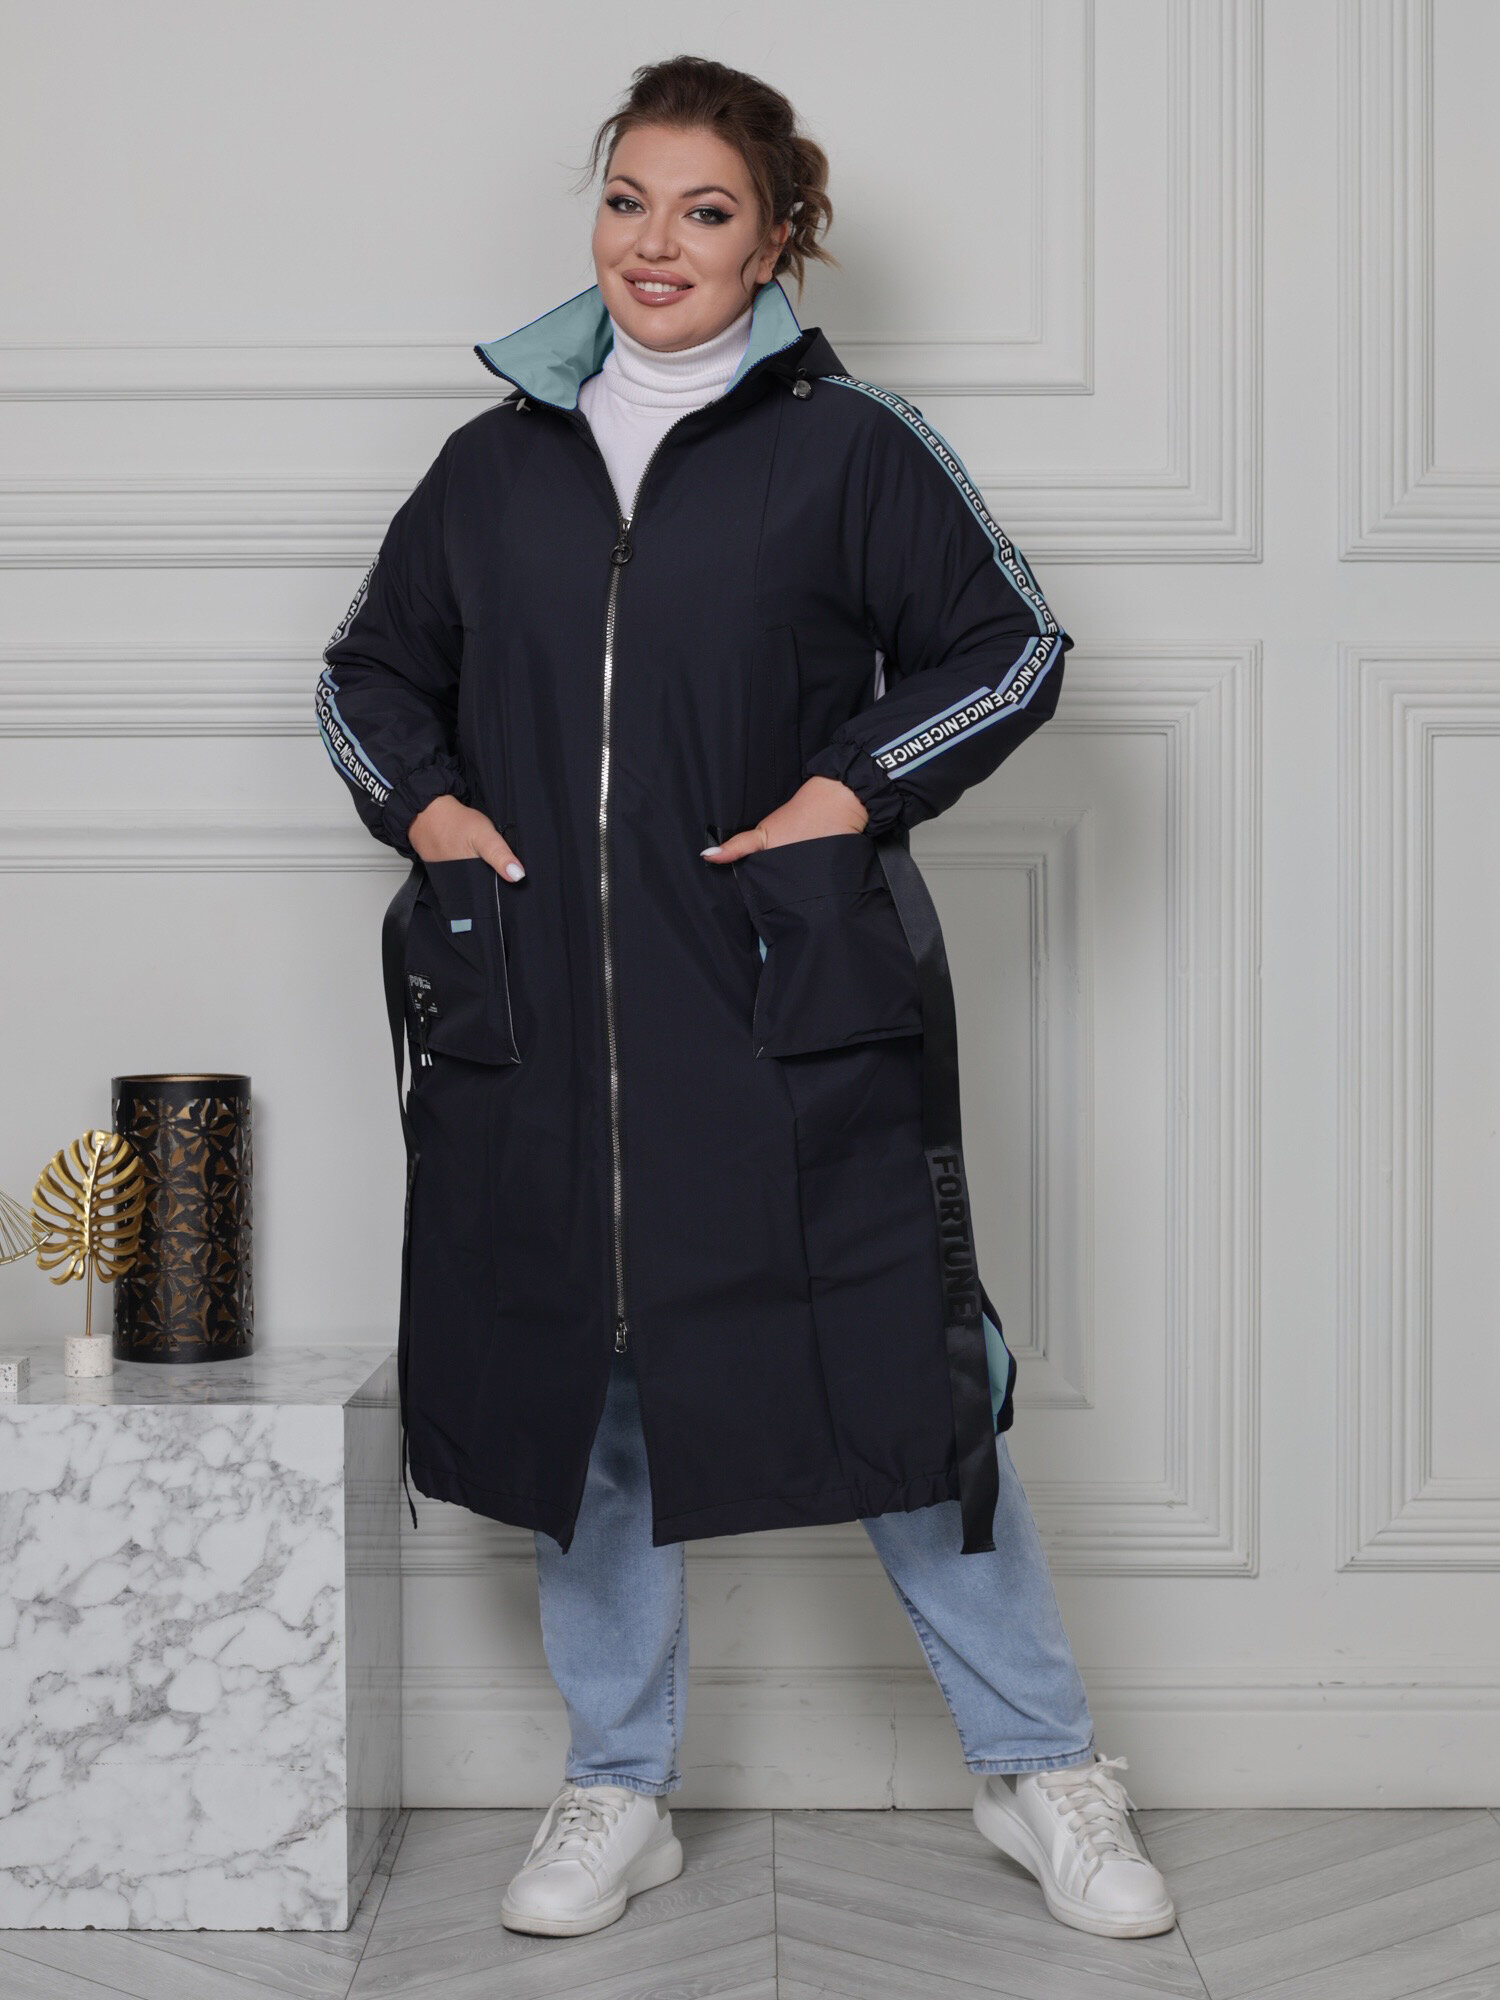 Женское пальто с цветными вставками,голубой,66 размер,бренд Karmelstyle,модель большого размера